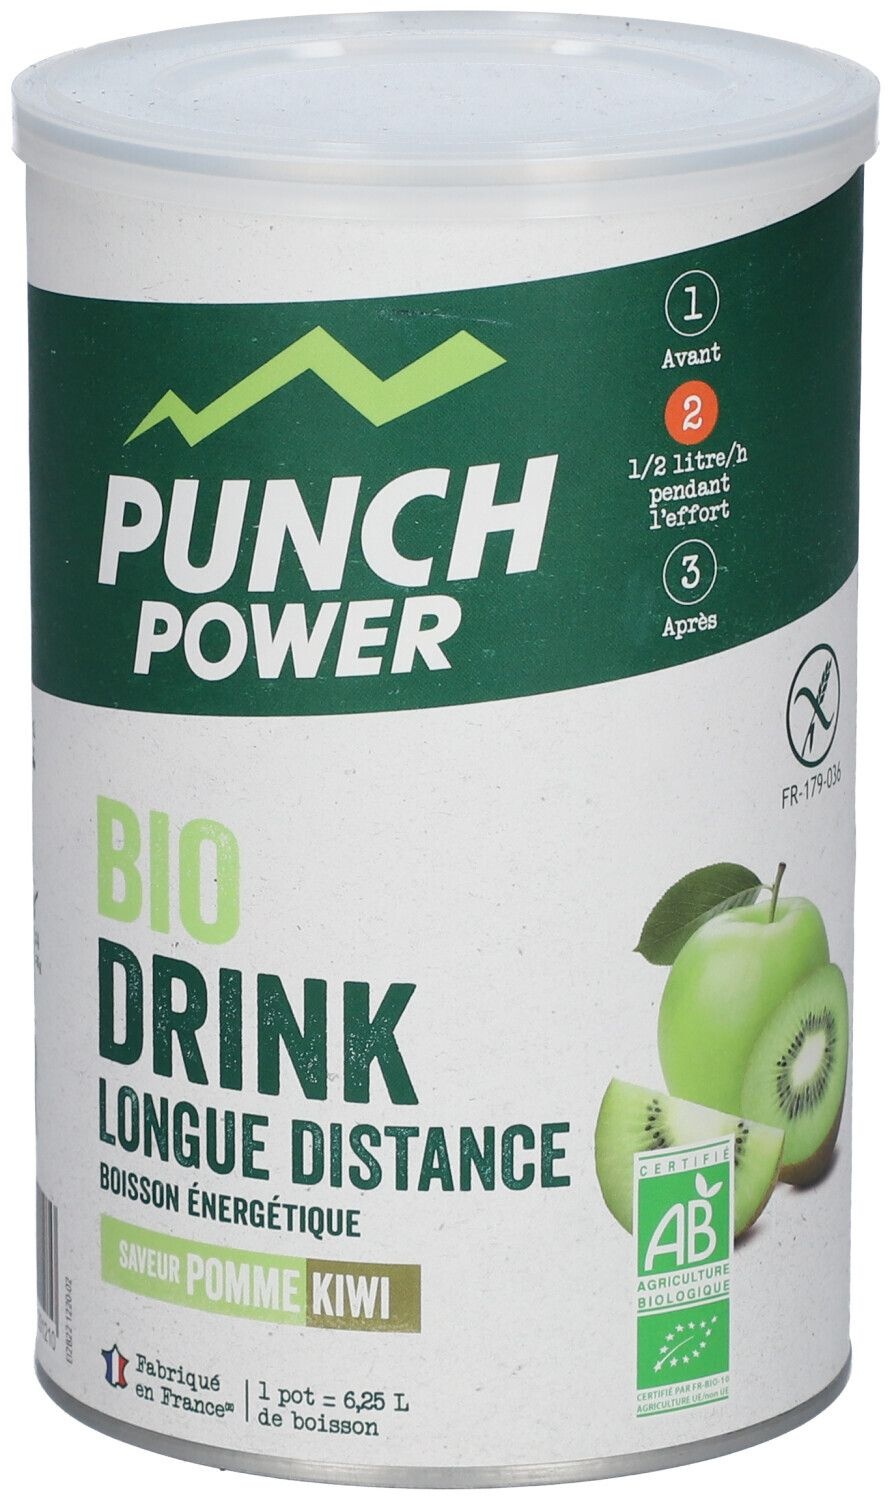 PUNCH POWER Biodrink Longue distance saveur Pomme Kiwi 500 g Poudre